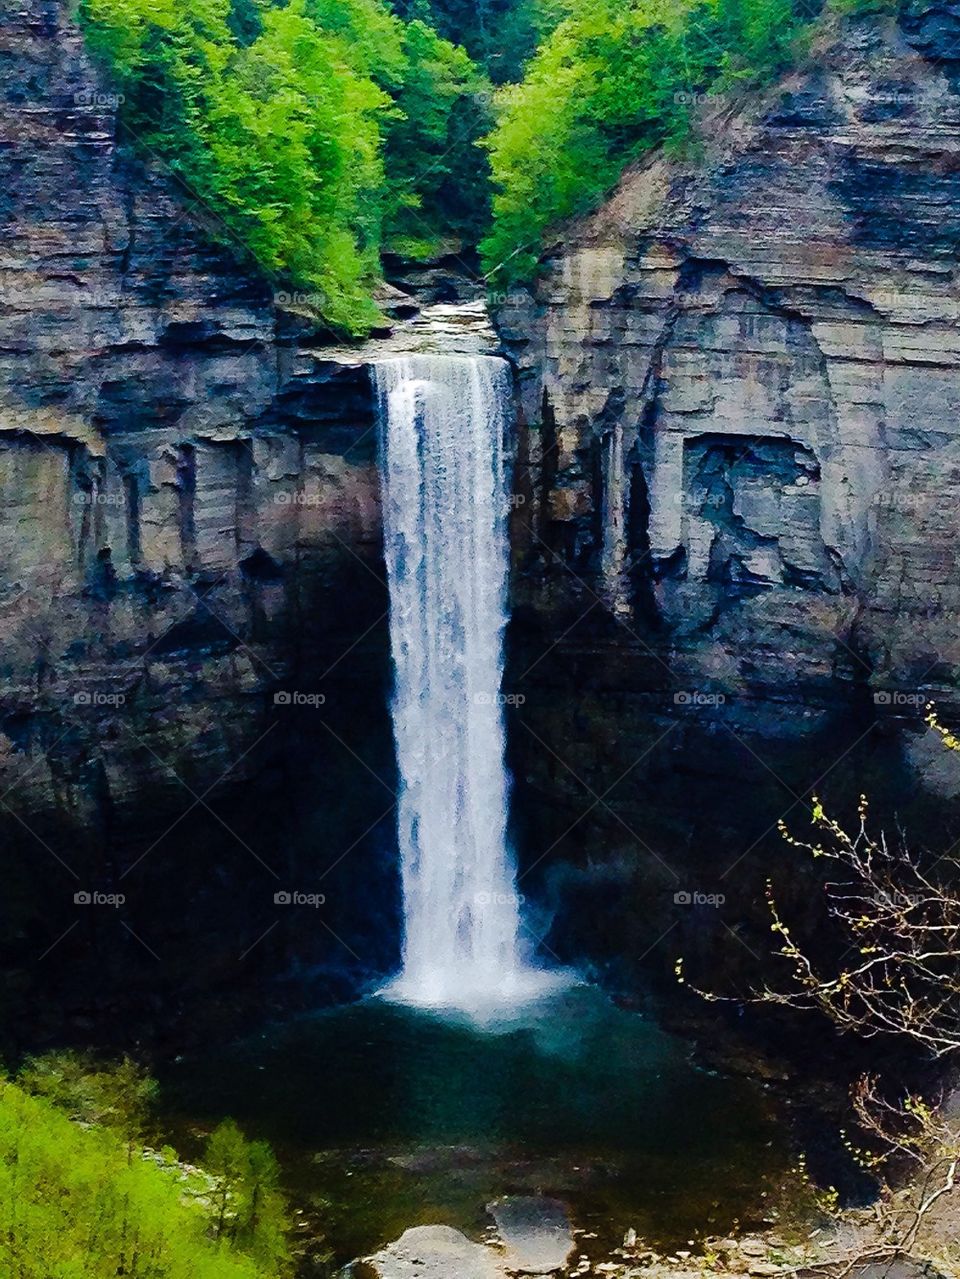 Tallest waterfall NY